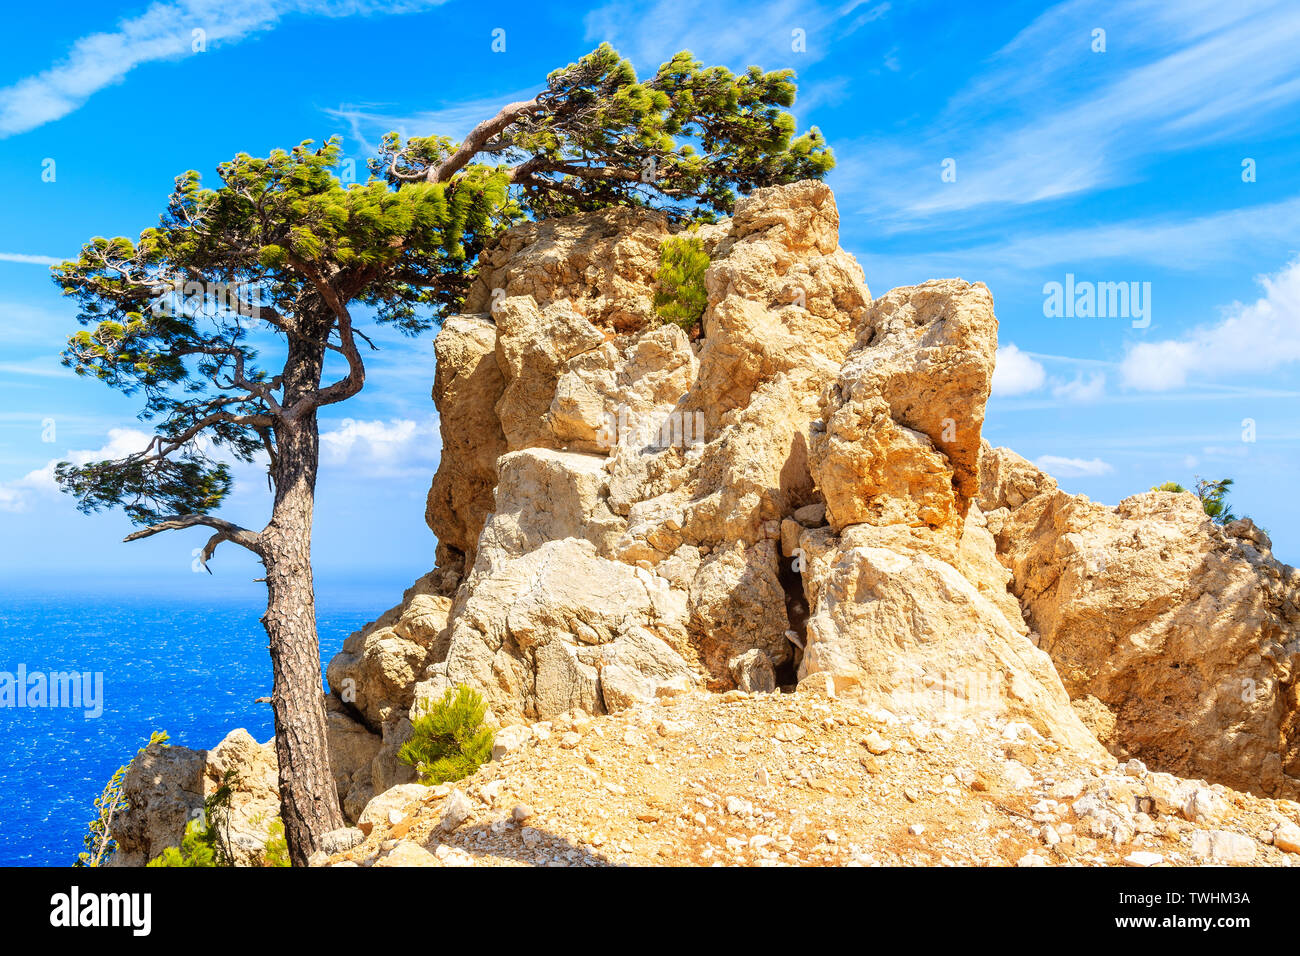 Pin et rochers sur la côte de la mer de l'île de Karpathos, Grèce Banque D'Images